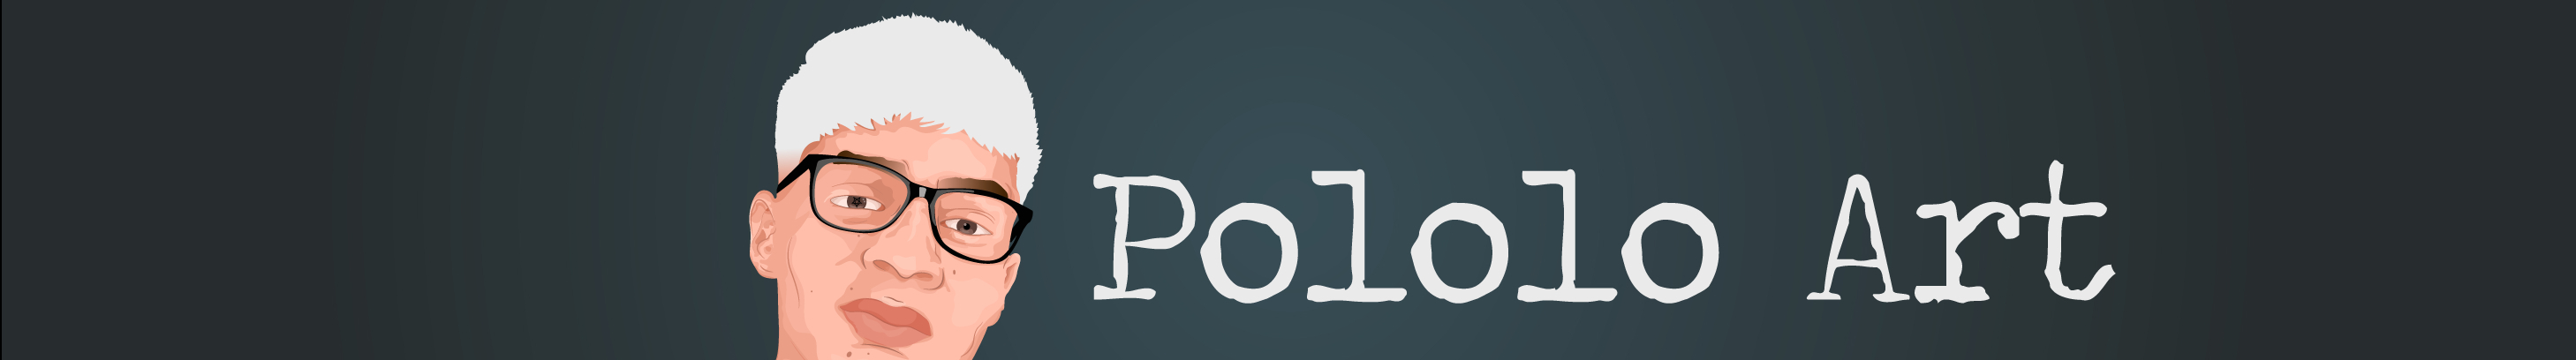 Pololo Art 的個人檔案橫幅